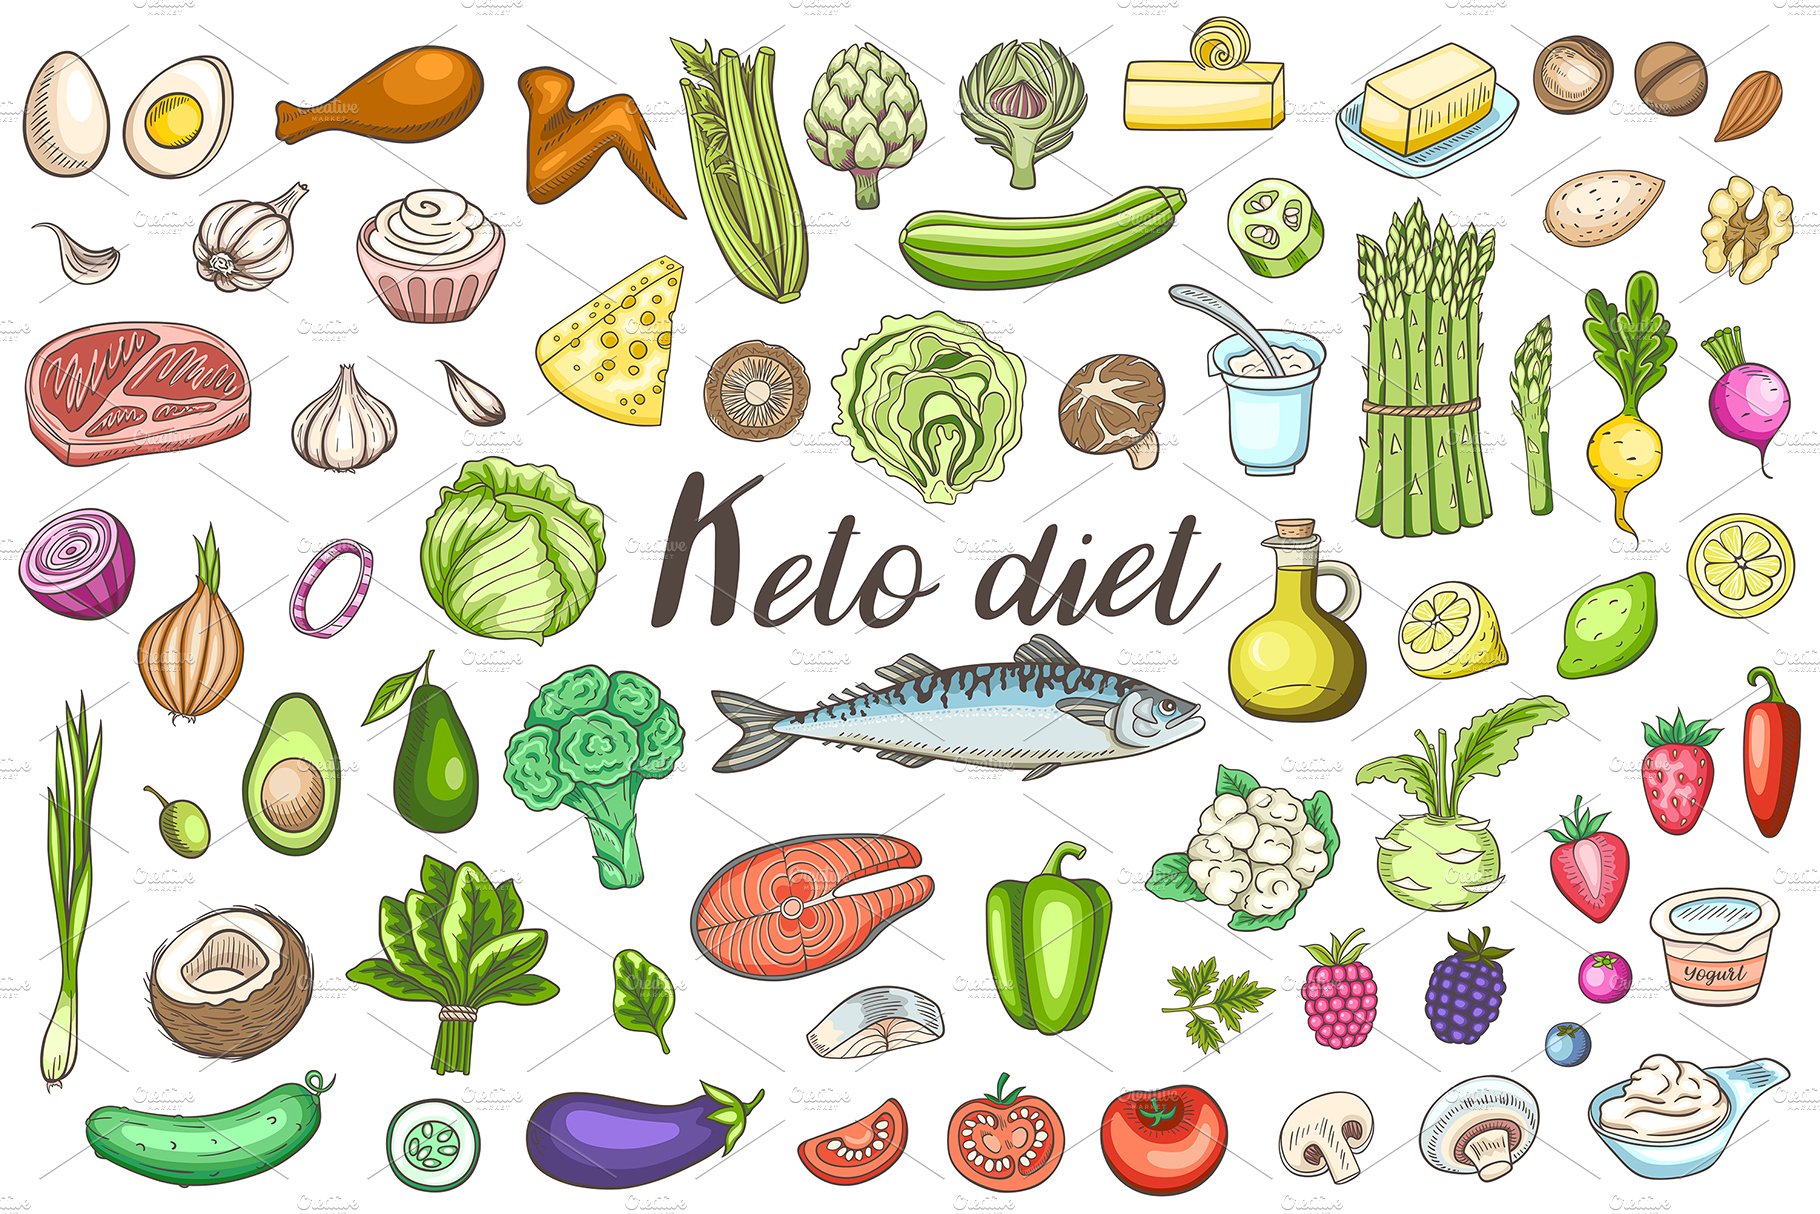 Ketogenic Diet Design Kit cover image.